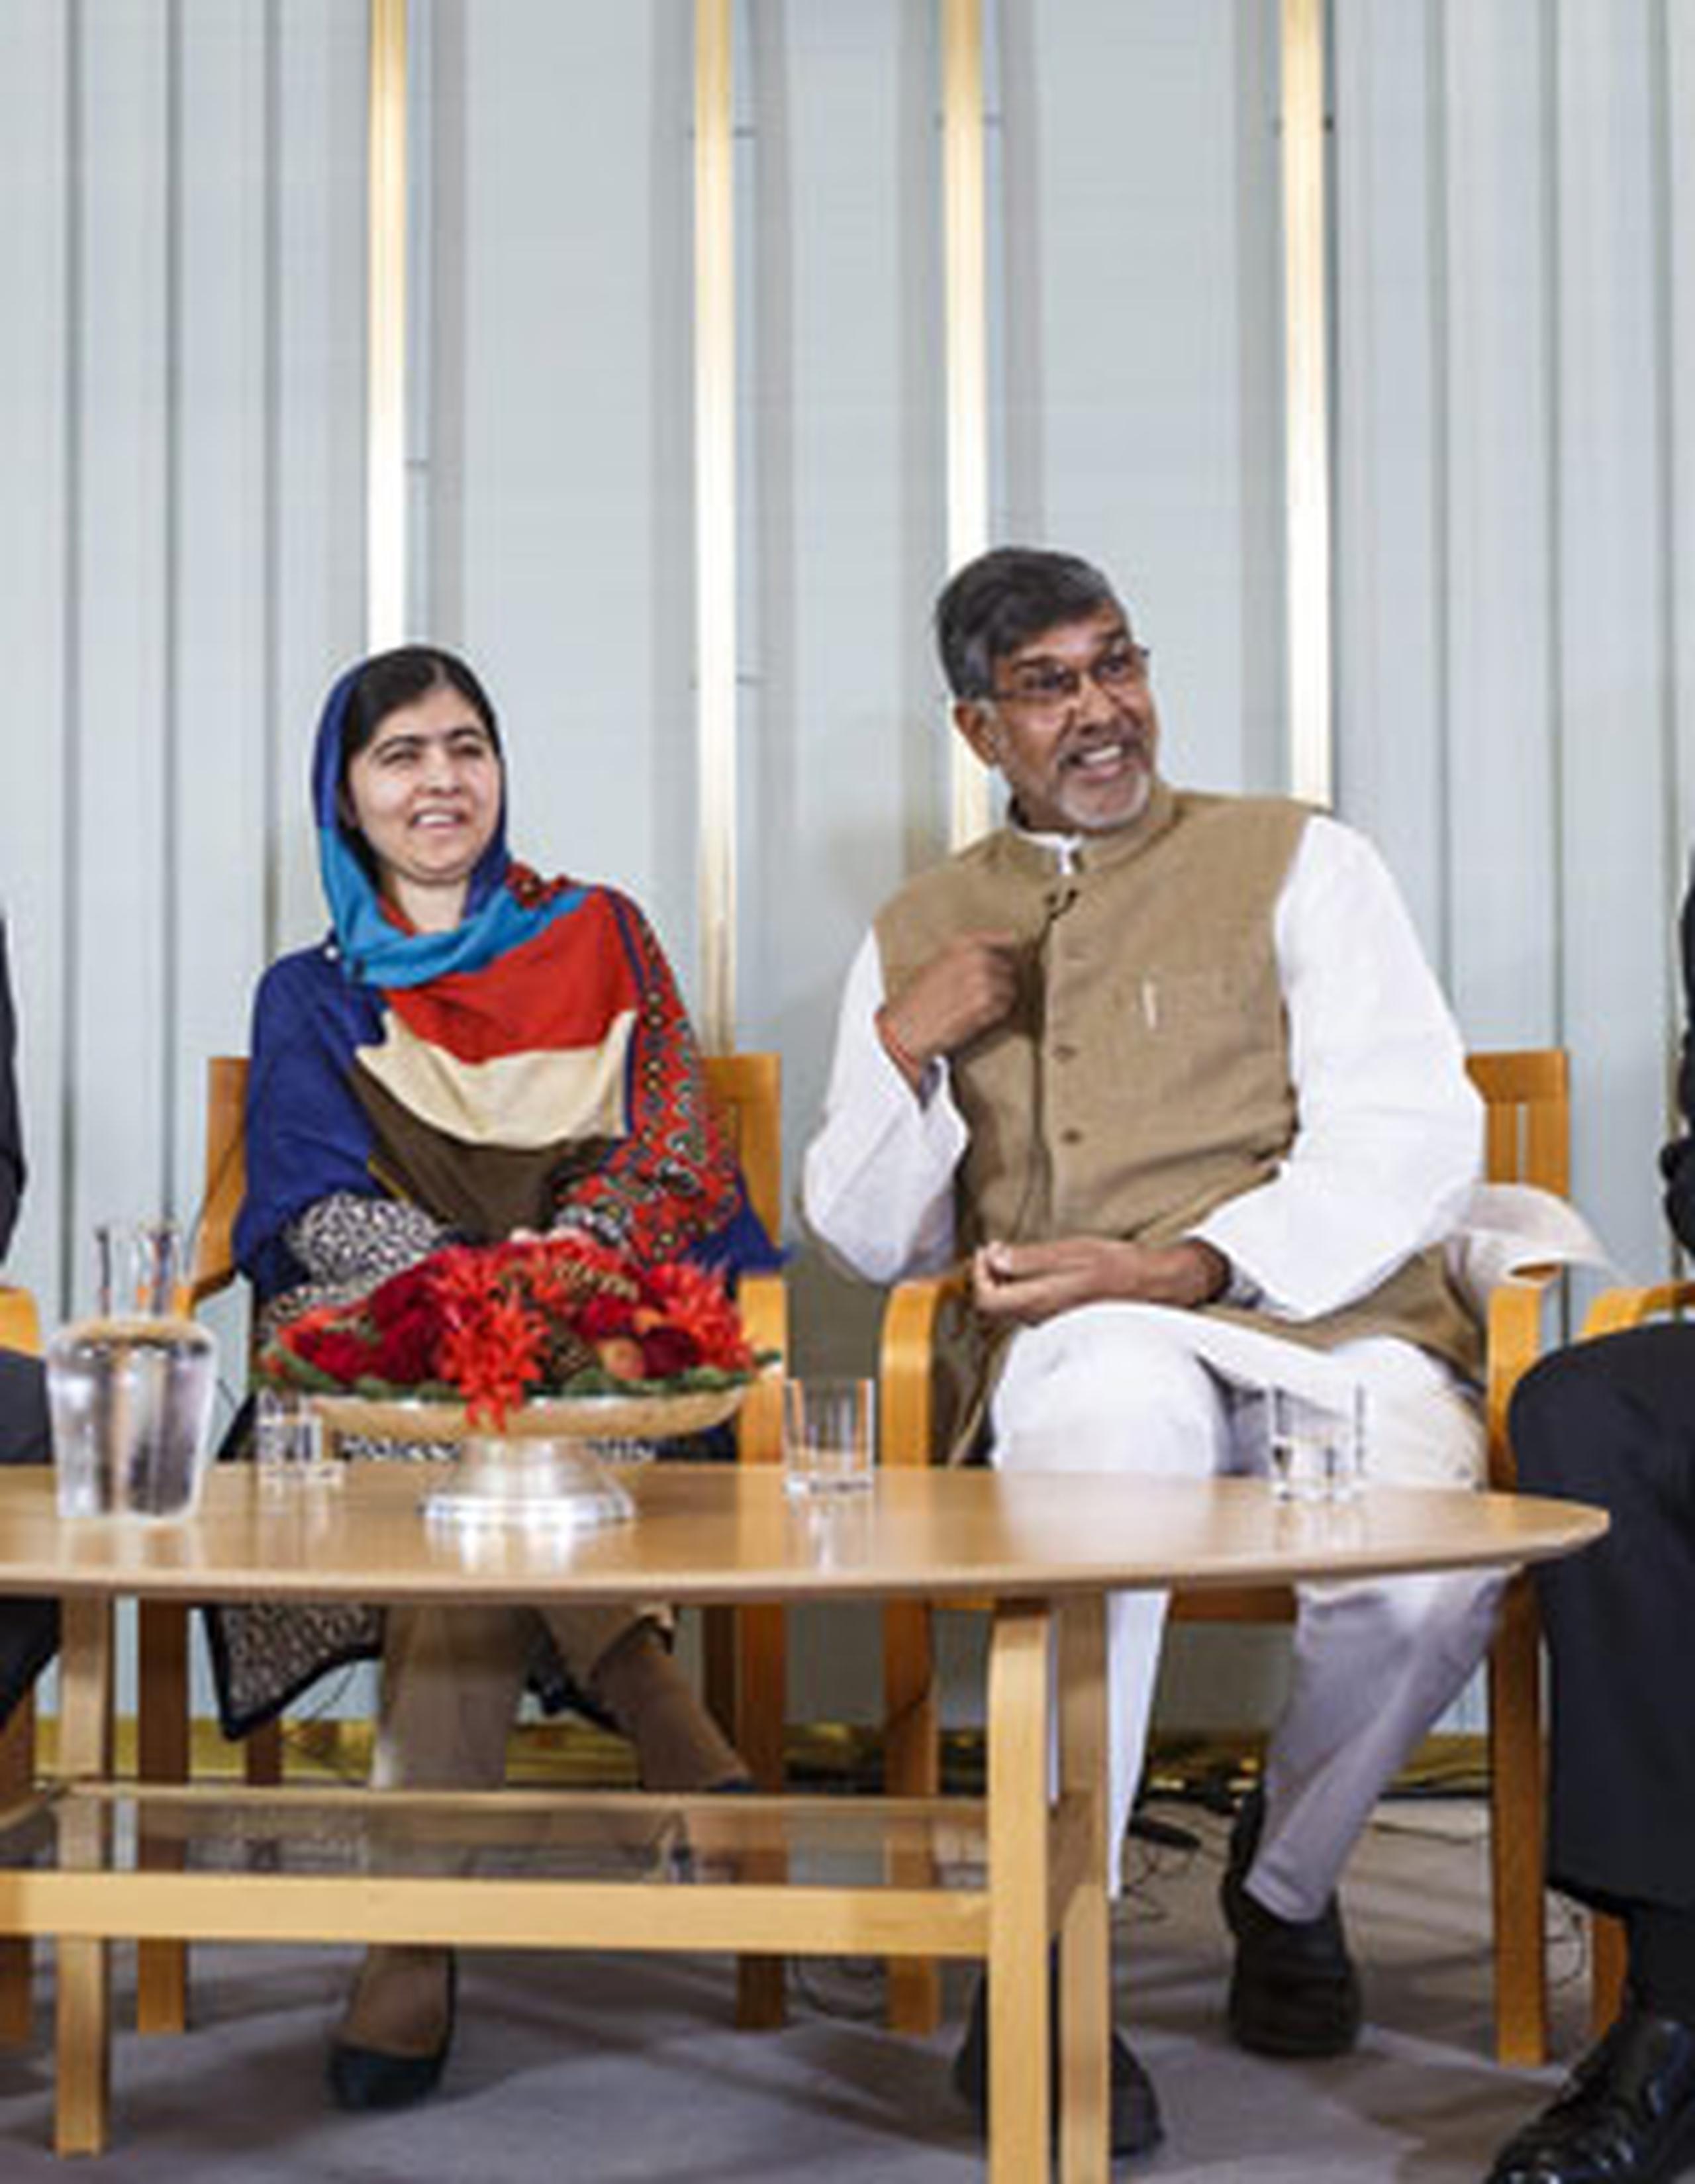 Malala y Satyarthi inaugurarán el jueves una exposición en ese mismo centro que incluye objetos personales suyos, como el uniforme escolar que llevaba Malala el día del atentado; y asistirán ese mismo día por la noche al Concierto del Nobel de la Paz en el Spektrum de la capital noruega. (Agencia EFE)